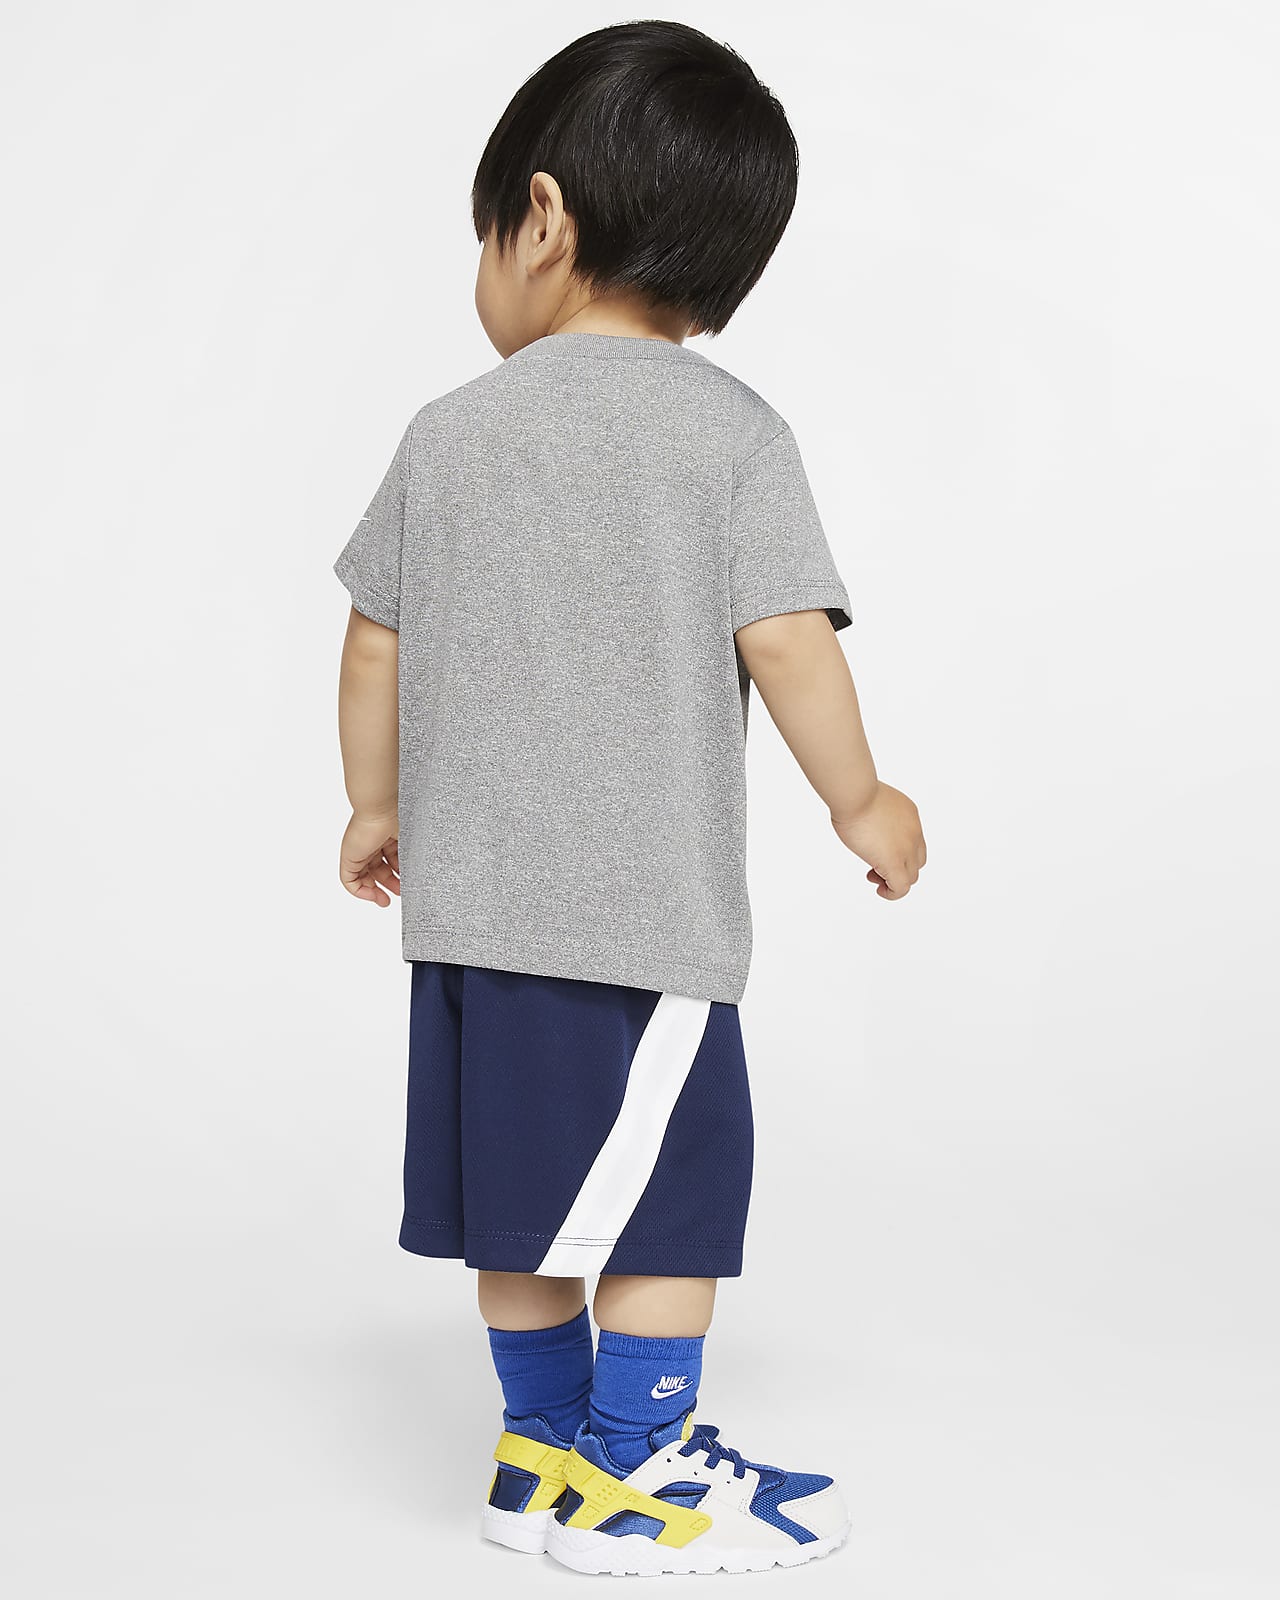 Nike Baby (12–24M) T-Shirt and Shorts Set. Nike UK